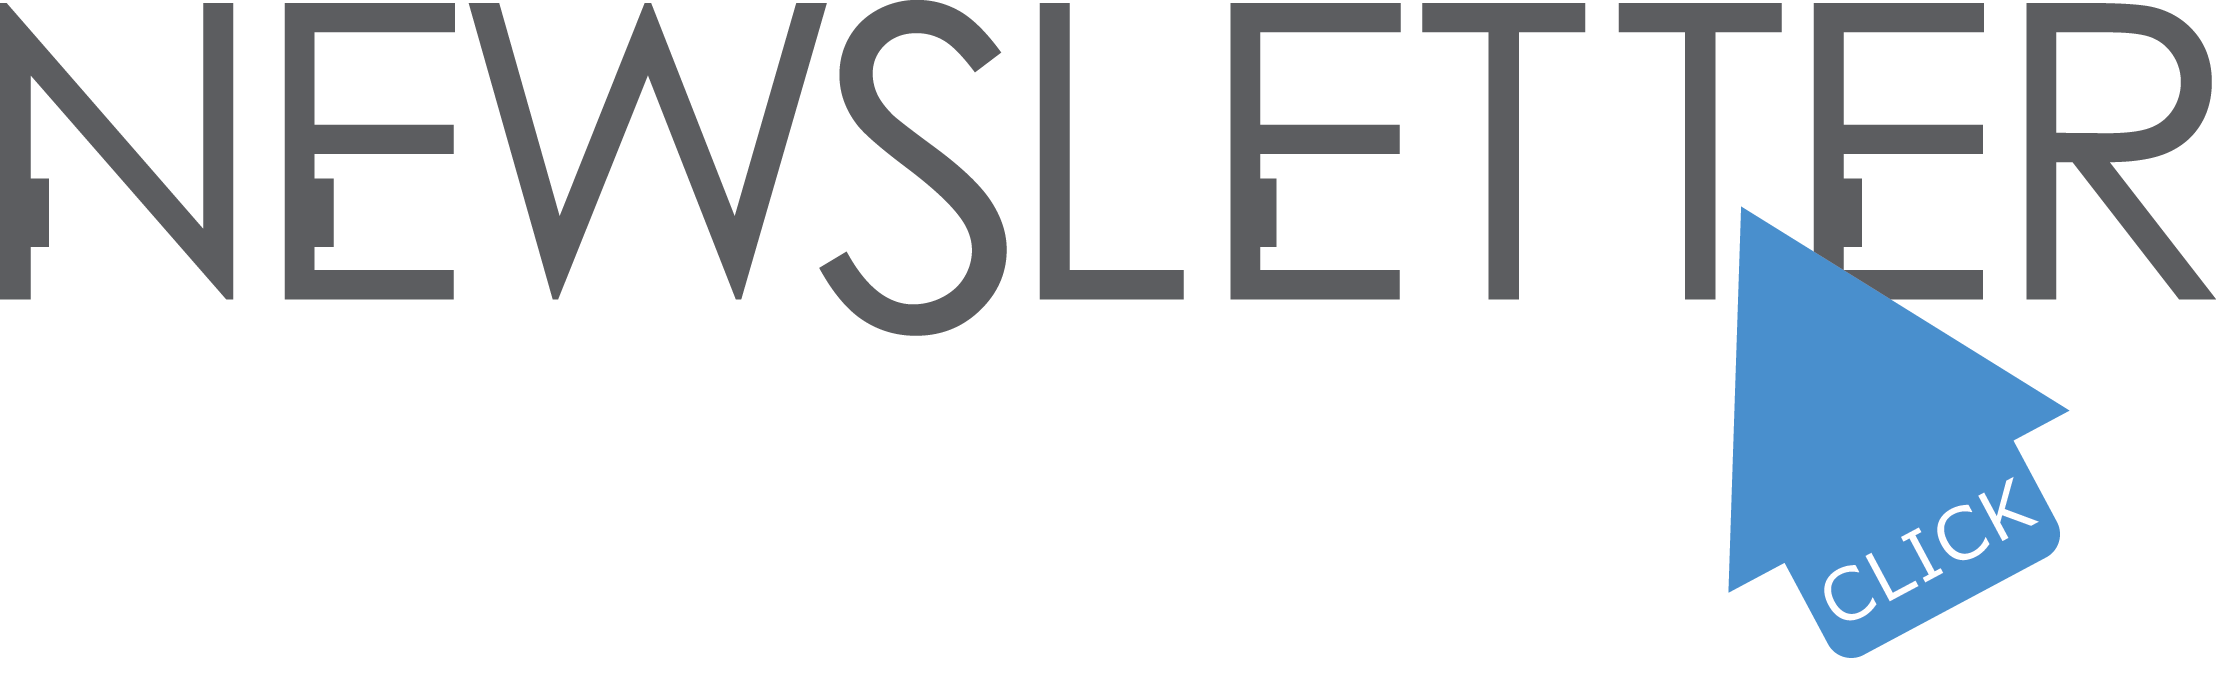 Newsletter Logo - Newsletter July 2016